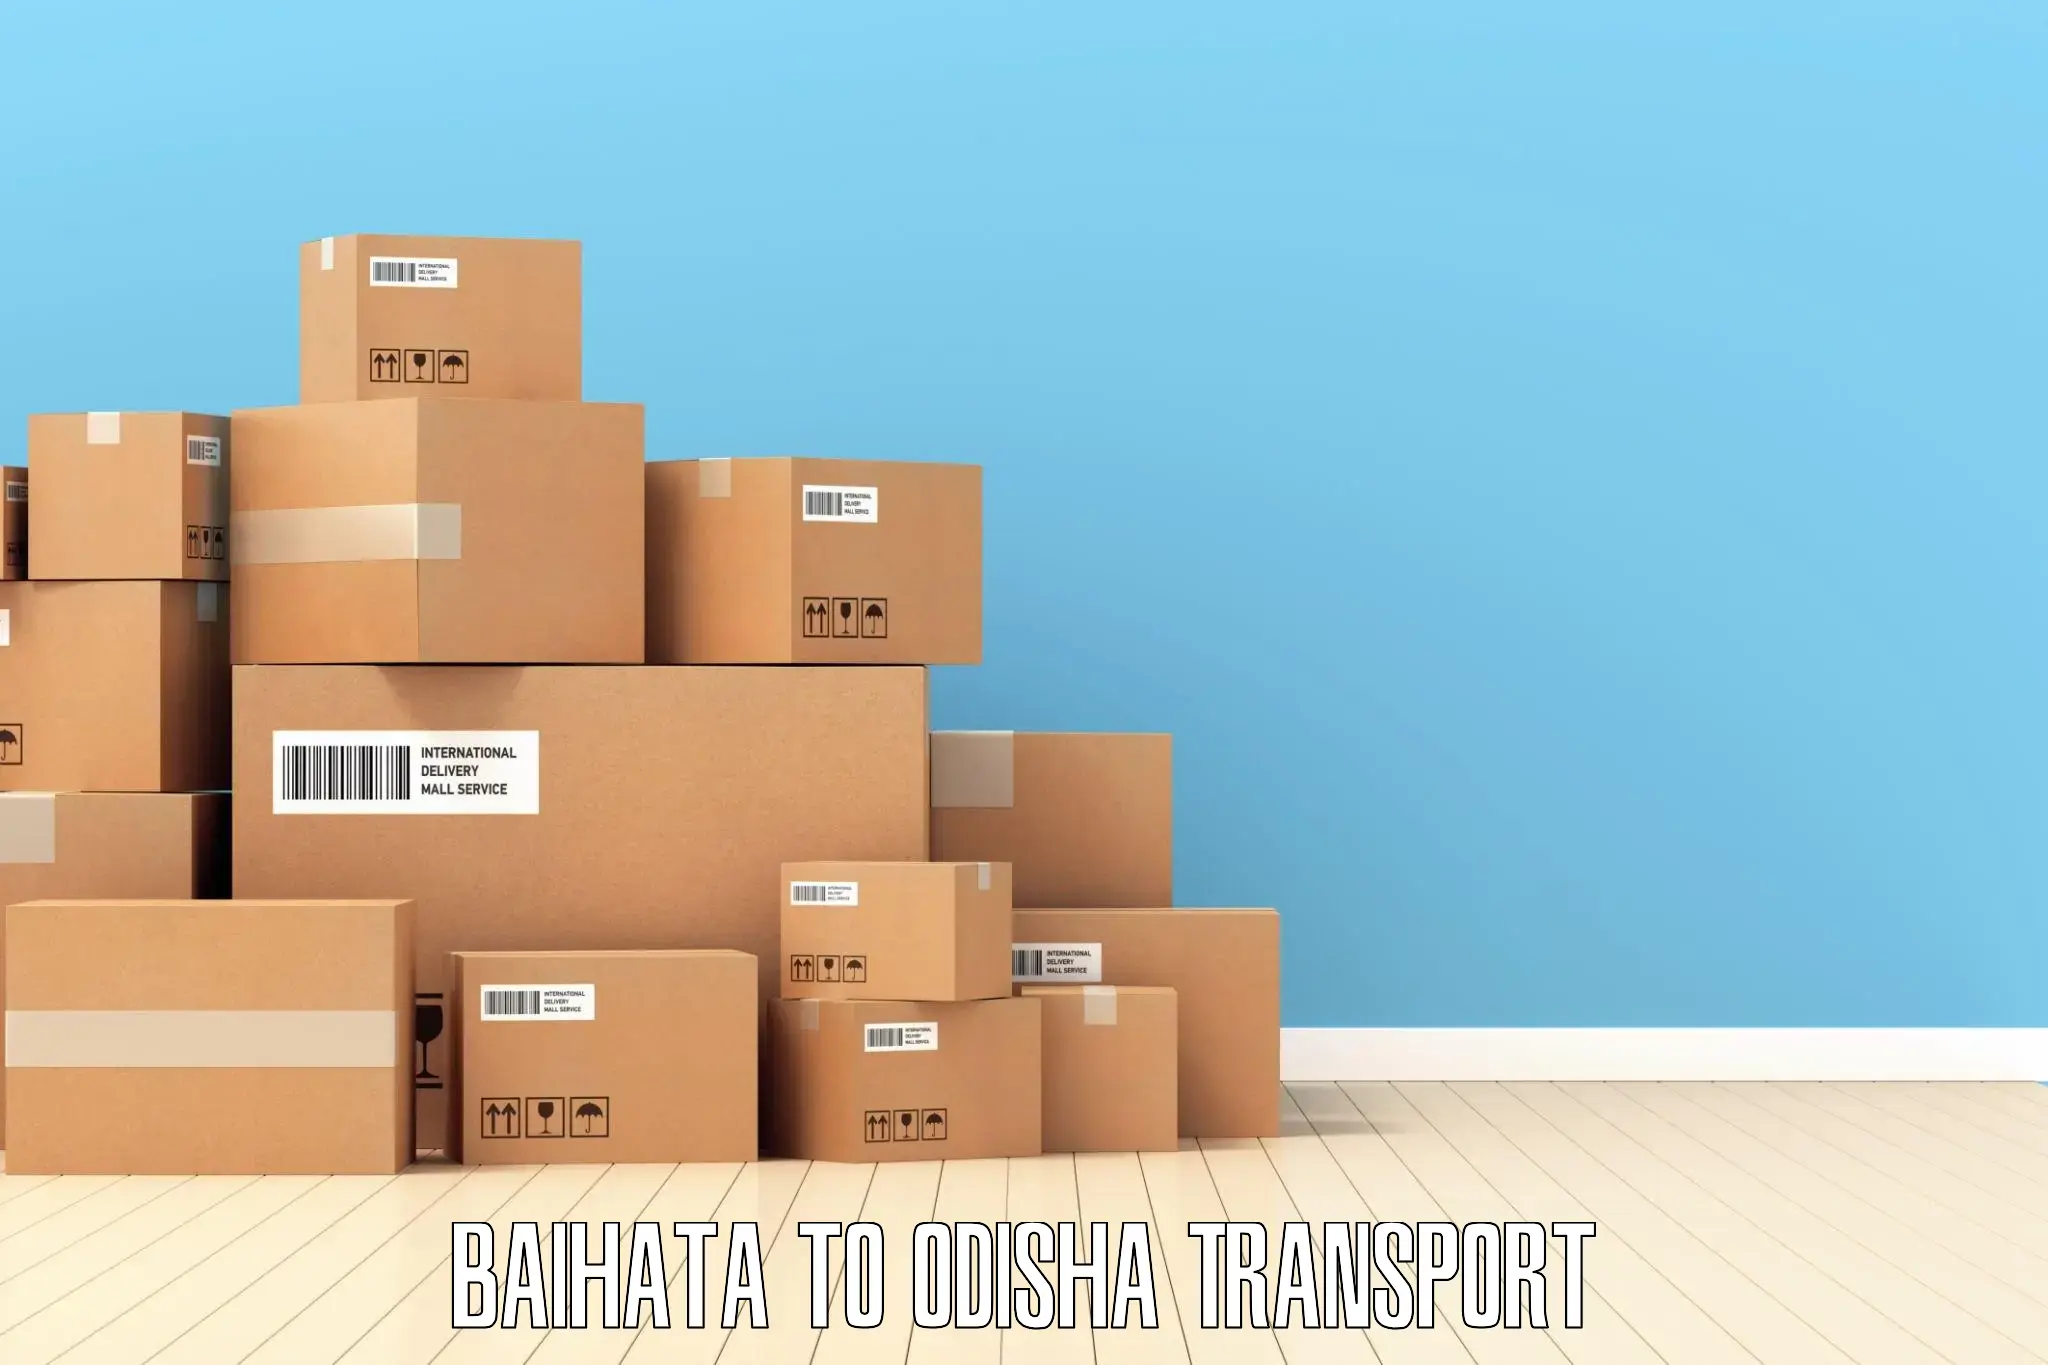 All India transport service Baihata to Daspalla